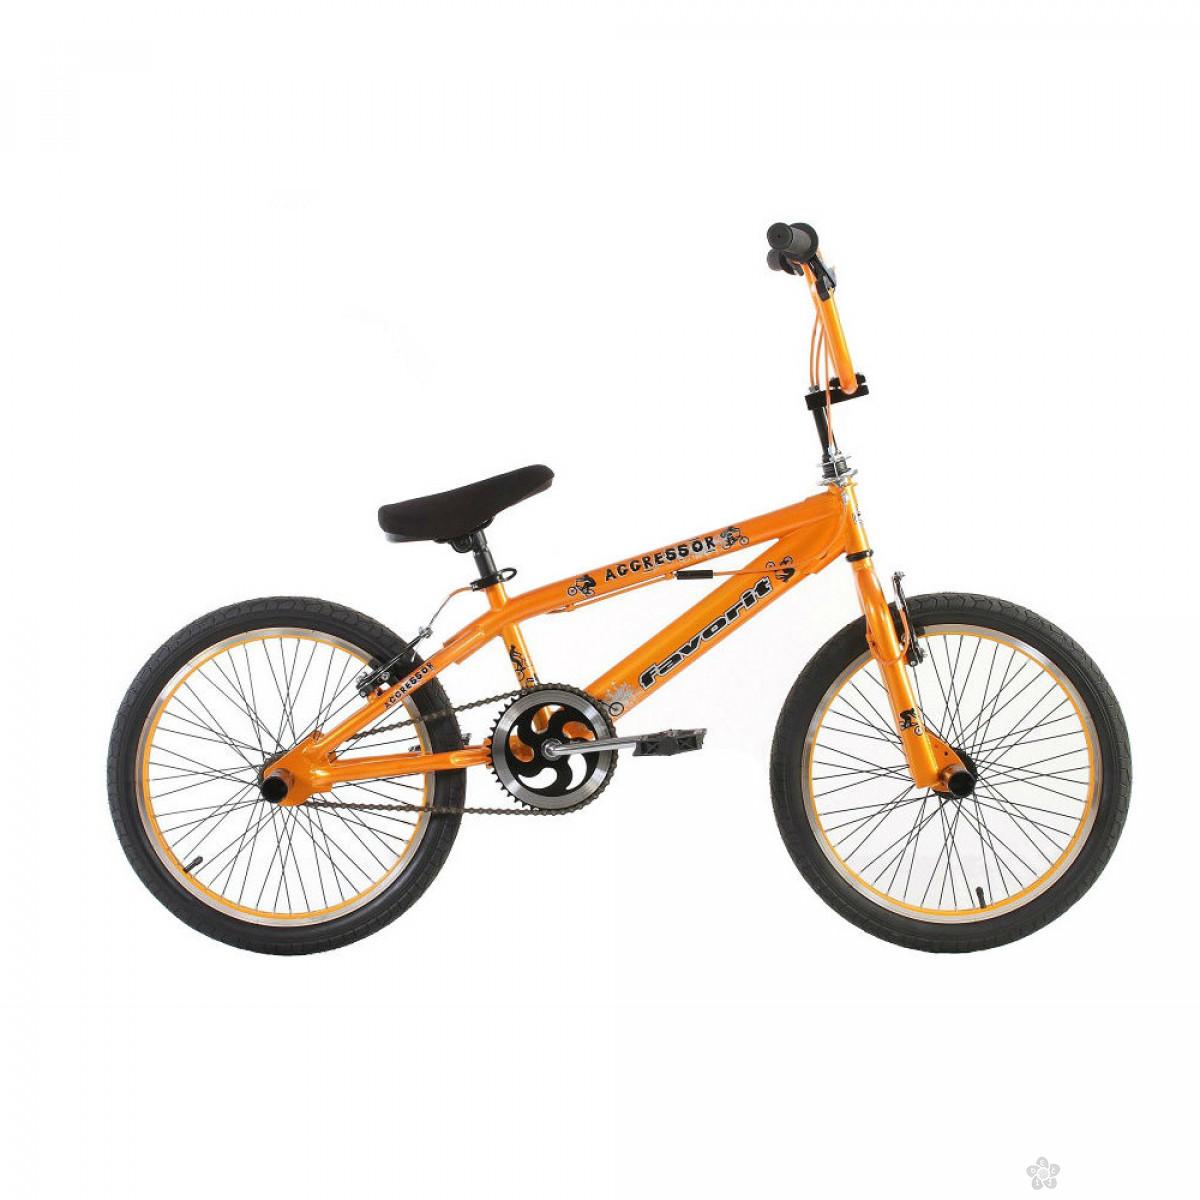 Dečiji Bicikl Agrressor BMX 20 narandžasta, 460170 